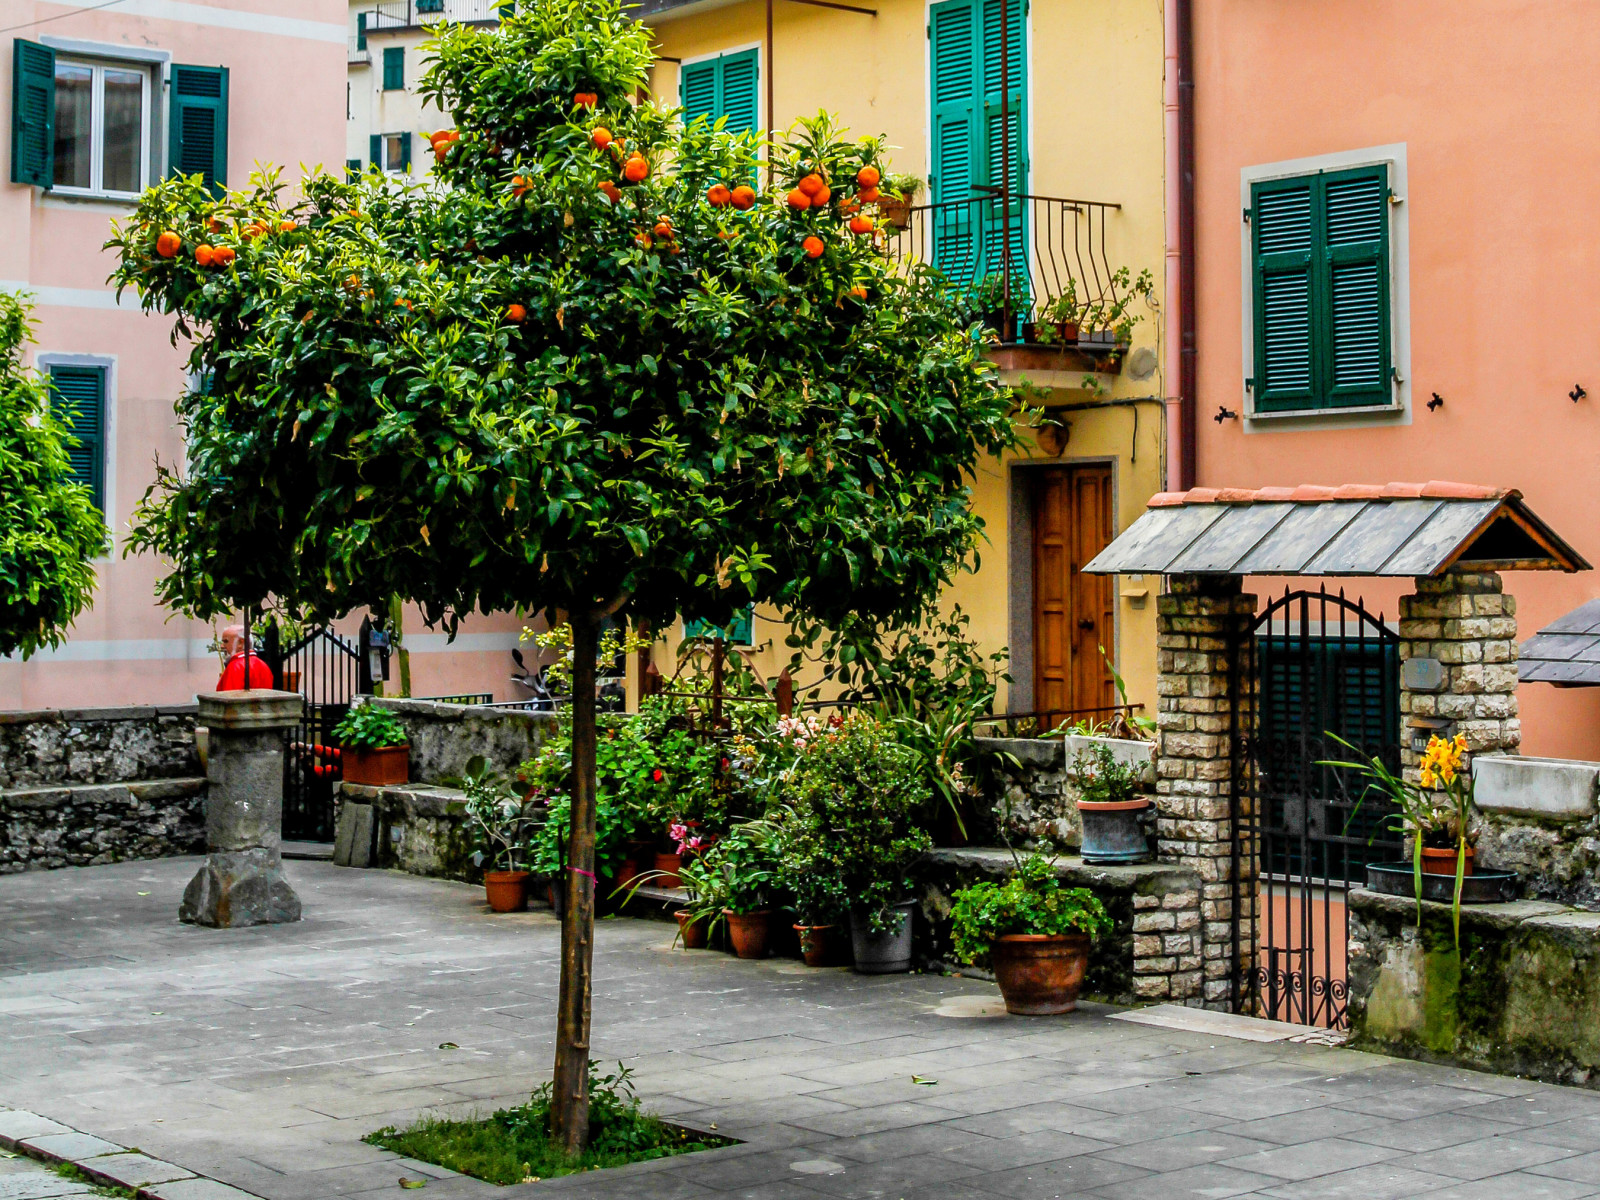 나무, 집, 꽃들, 이탈리아, 마당, 친퀘 테레, 창구, 냄비